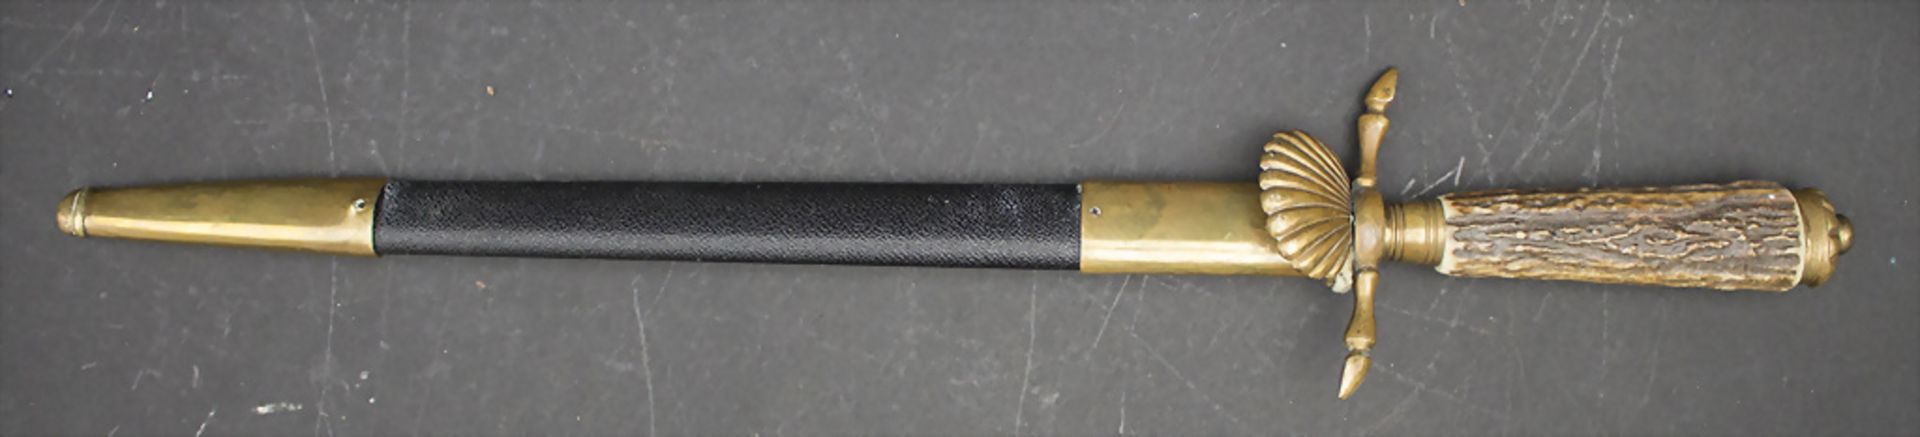 Hirschfänger / A hunting knife, deutsch, um 1900